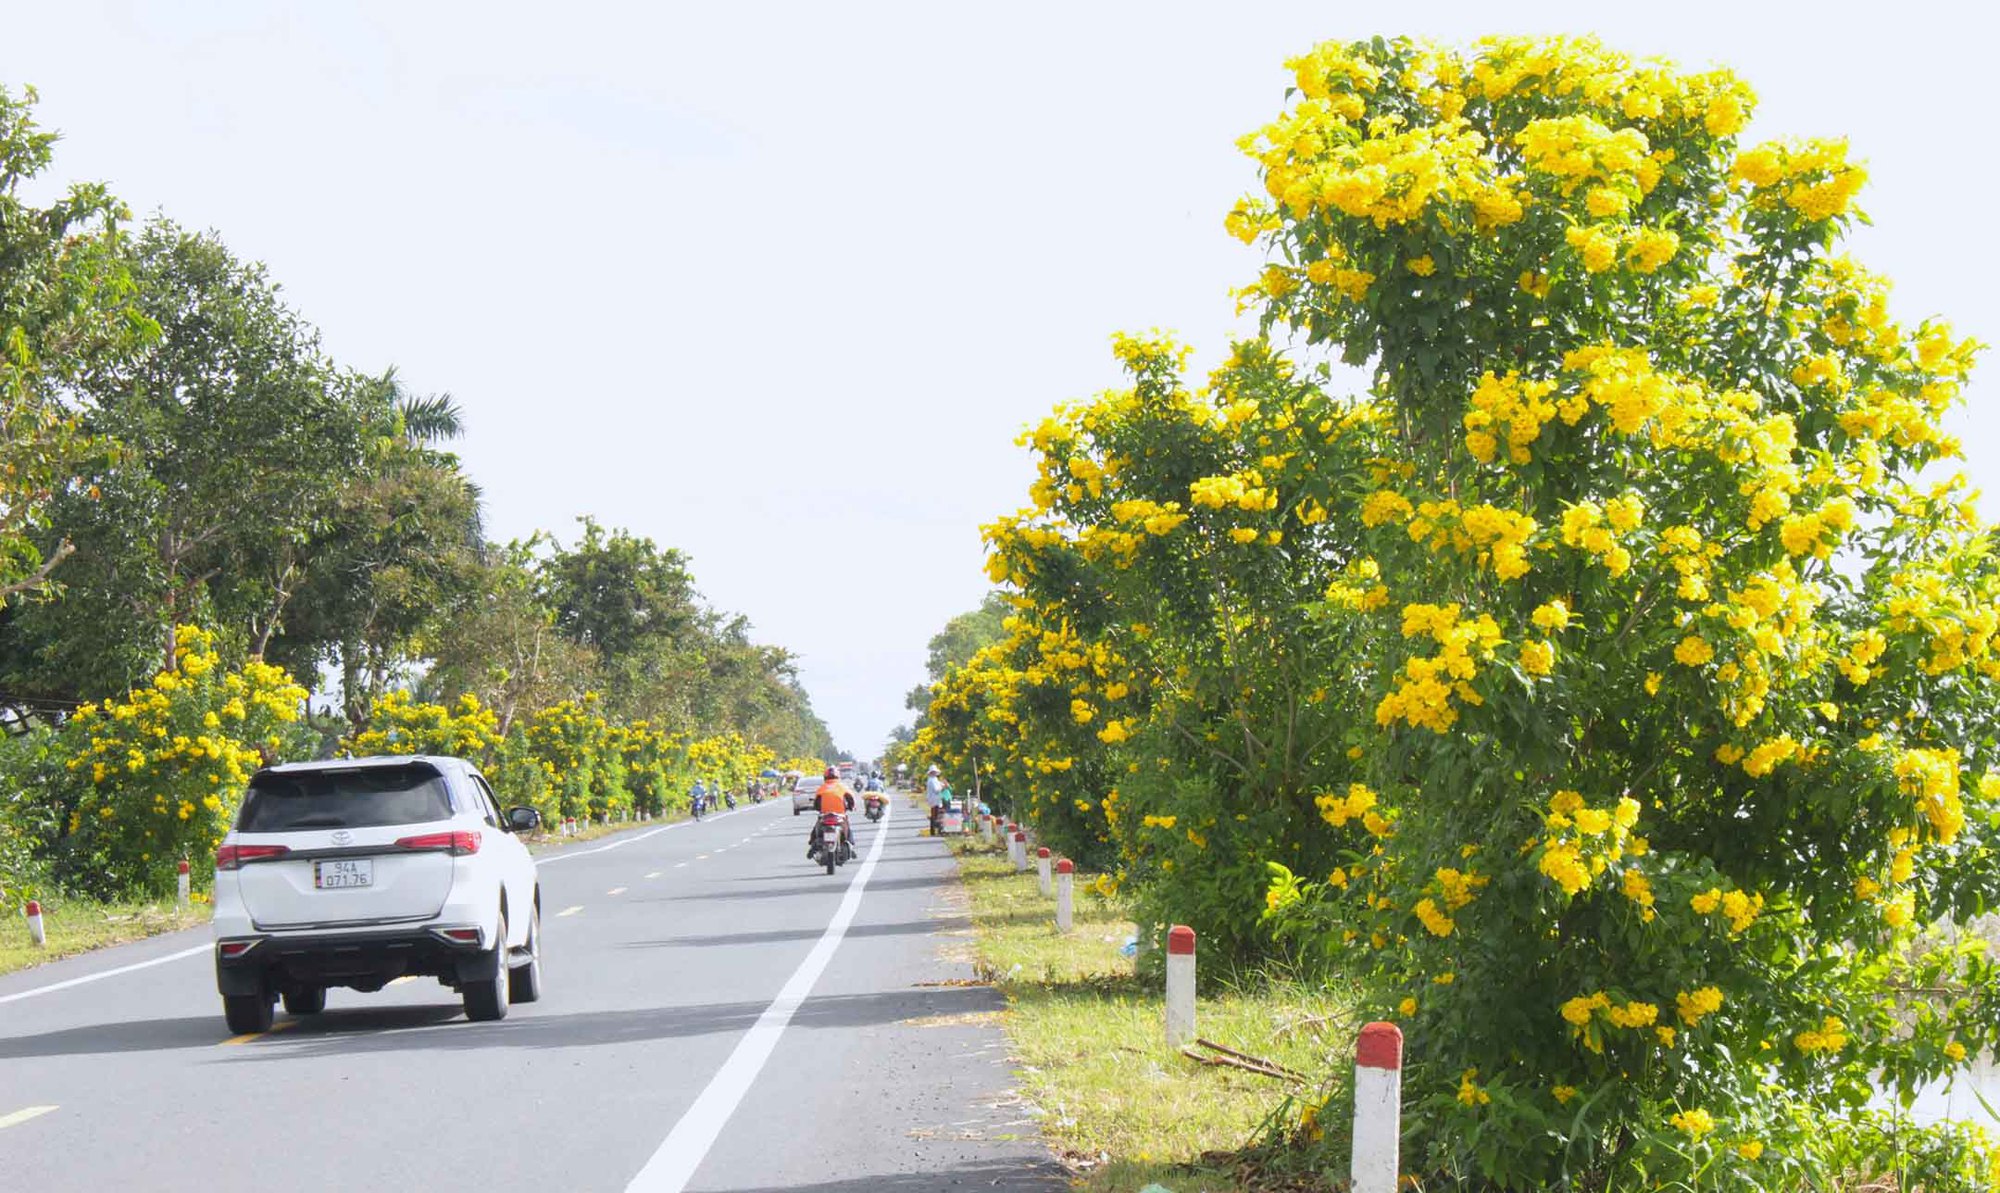 Tuyến đường hoa nông thôn mới trồng hoàng yến ở Hậu Giang, chụp ảnh, quay phim qua gương ô tô, xe máy đẹp như phim - Ảnh 1.